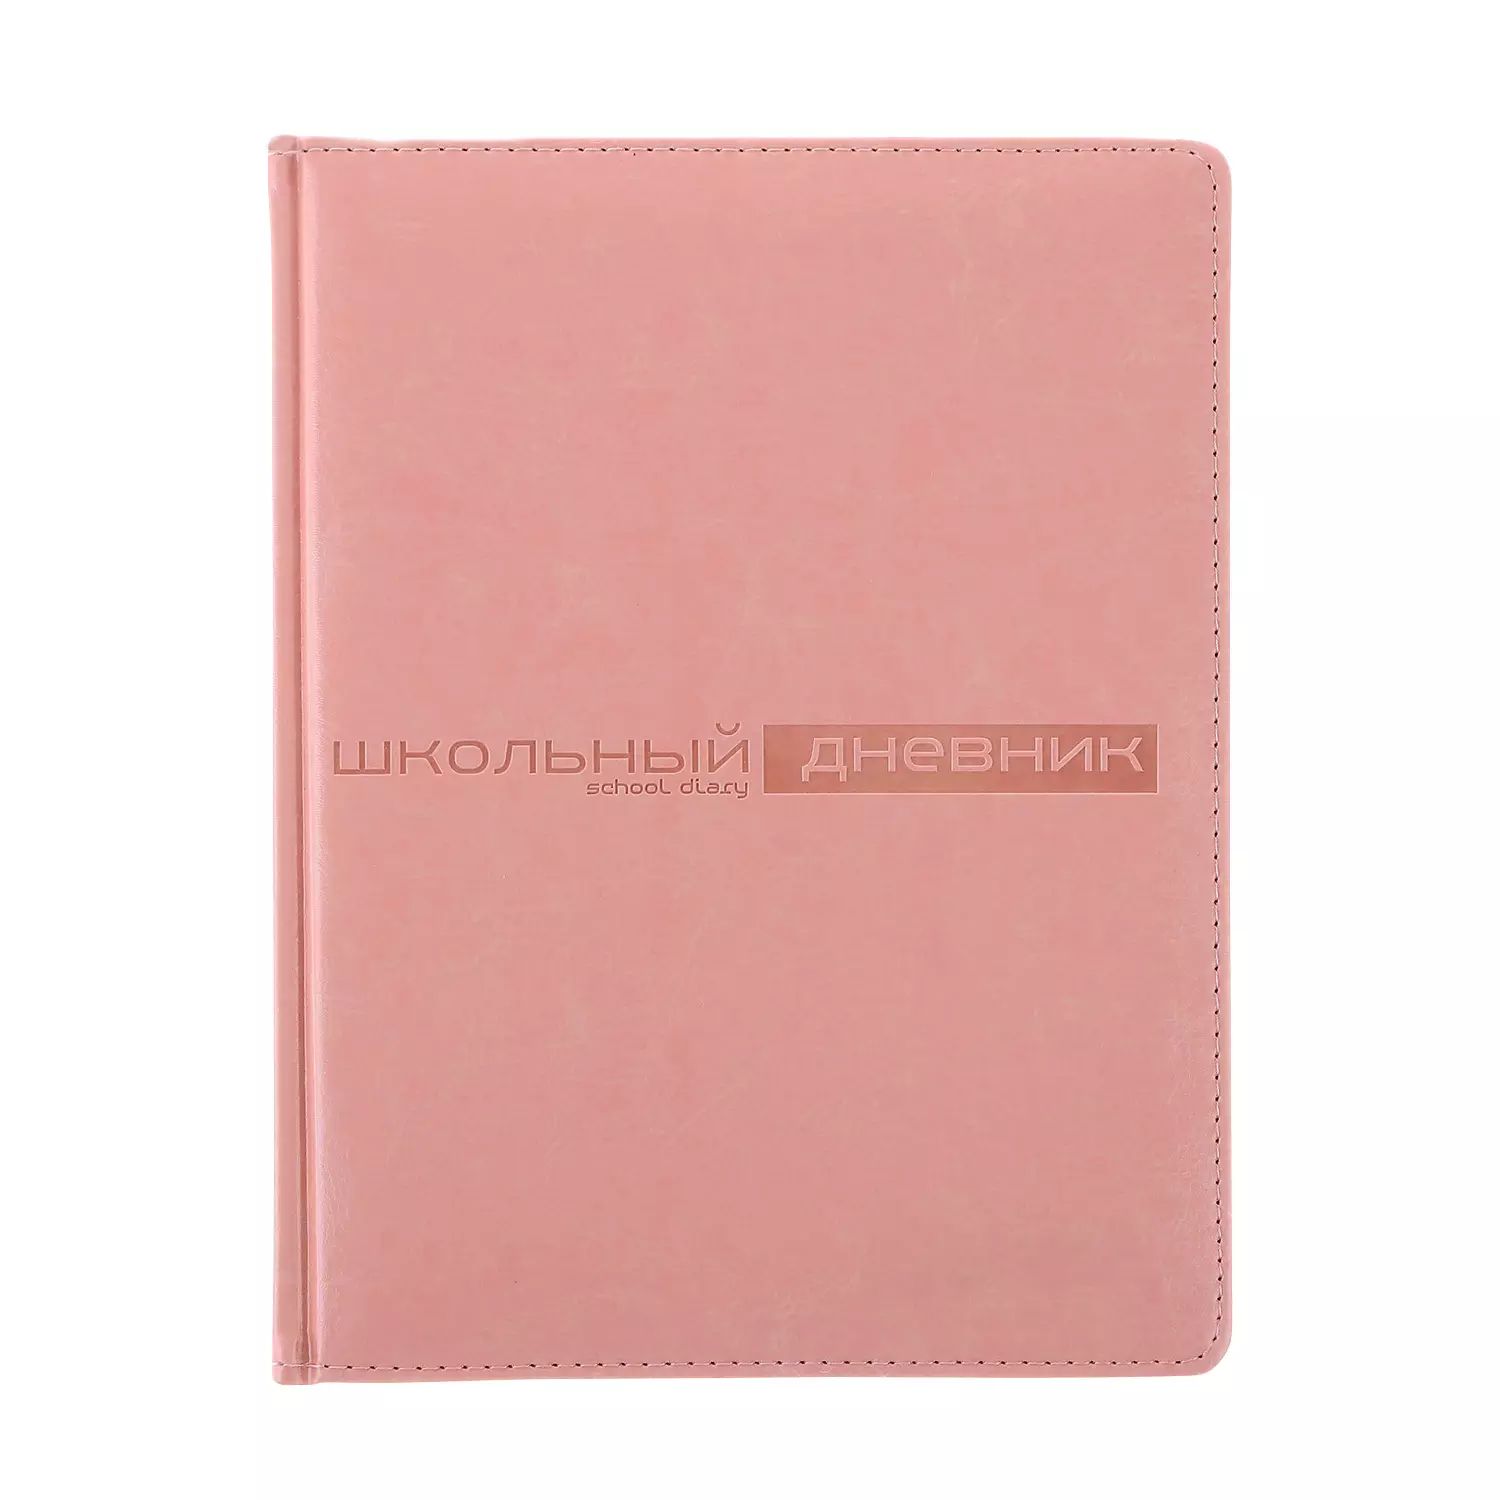 Дневник школьный А5 (170 х 220 мм) SIDNEY NEBRASKA розовый 48 л.